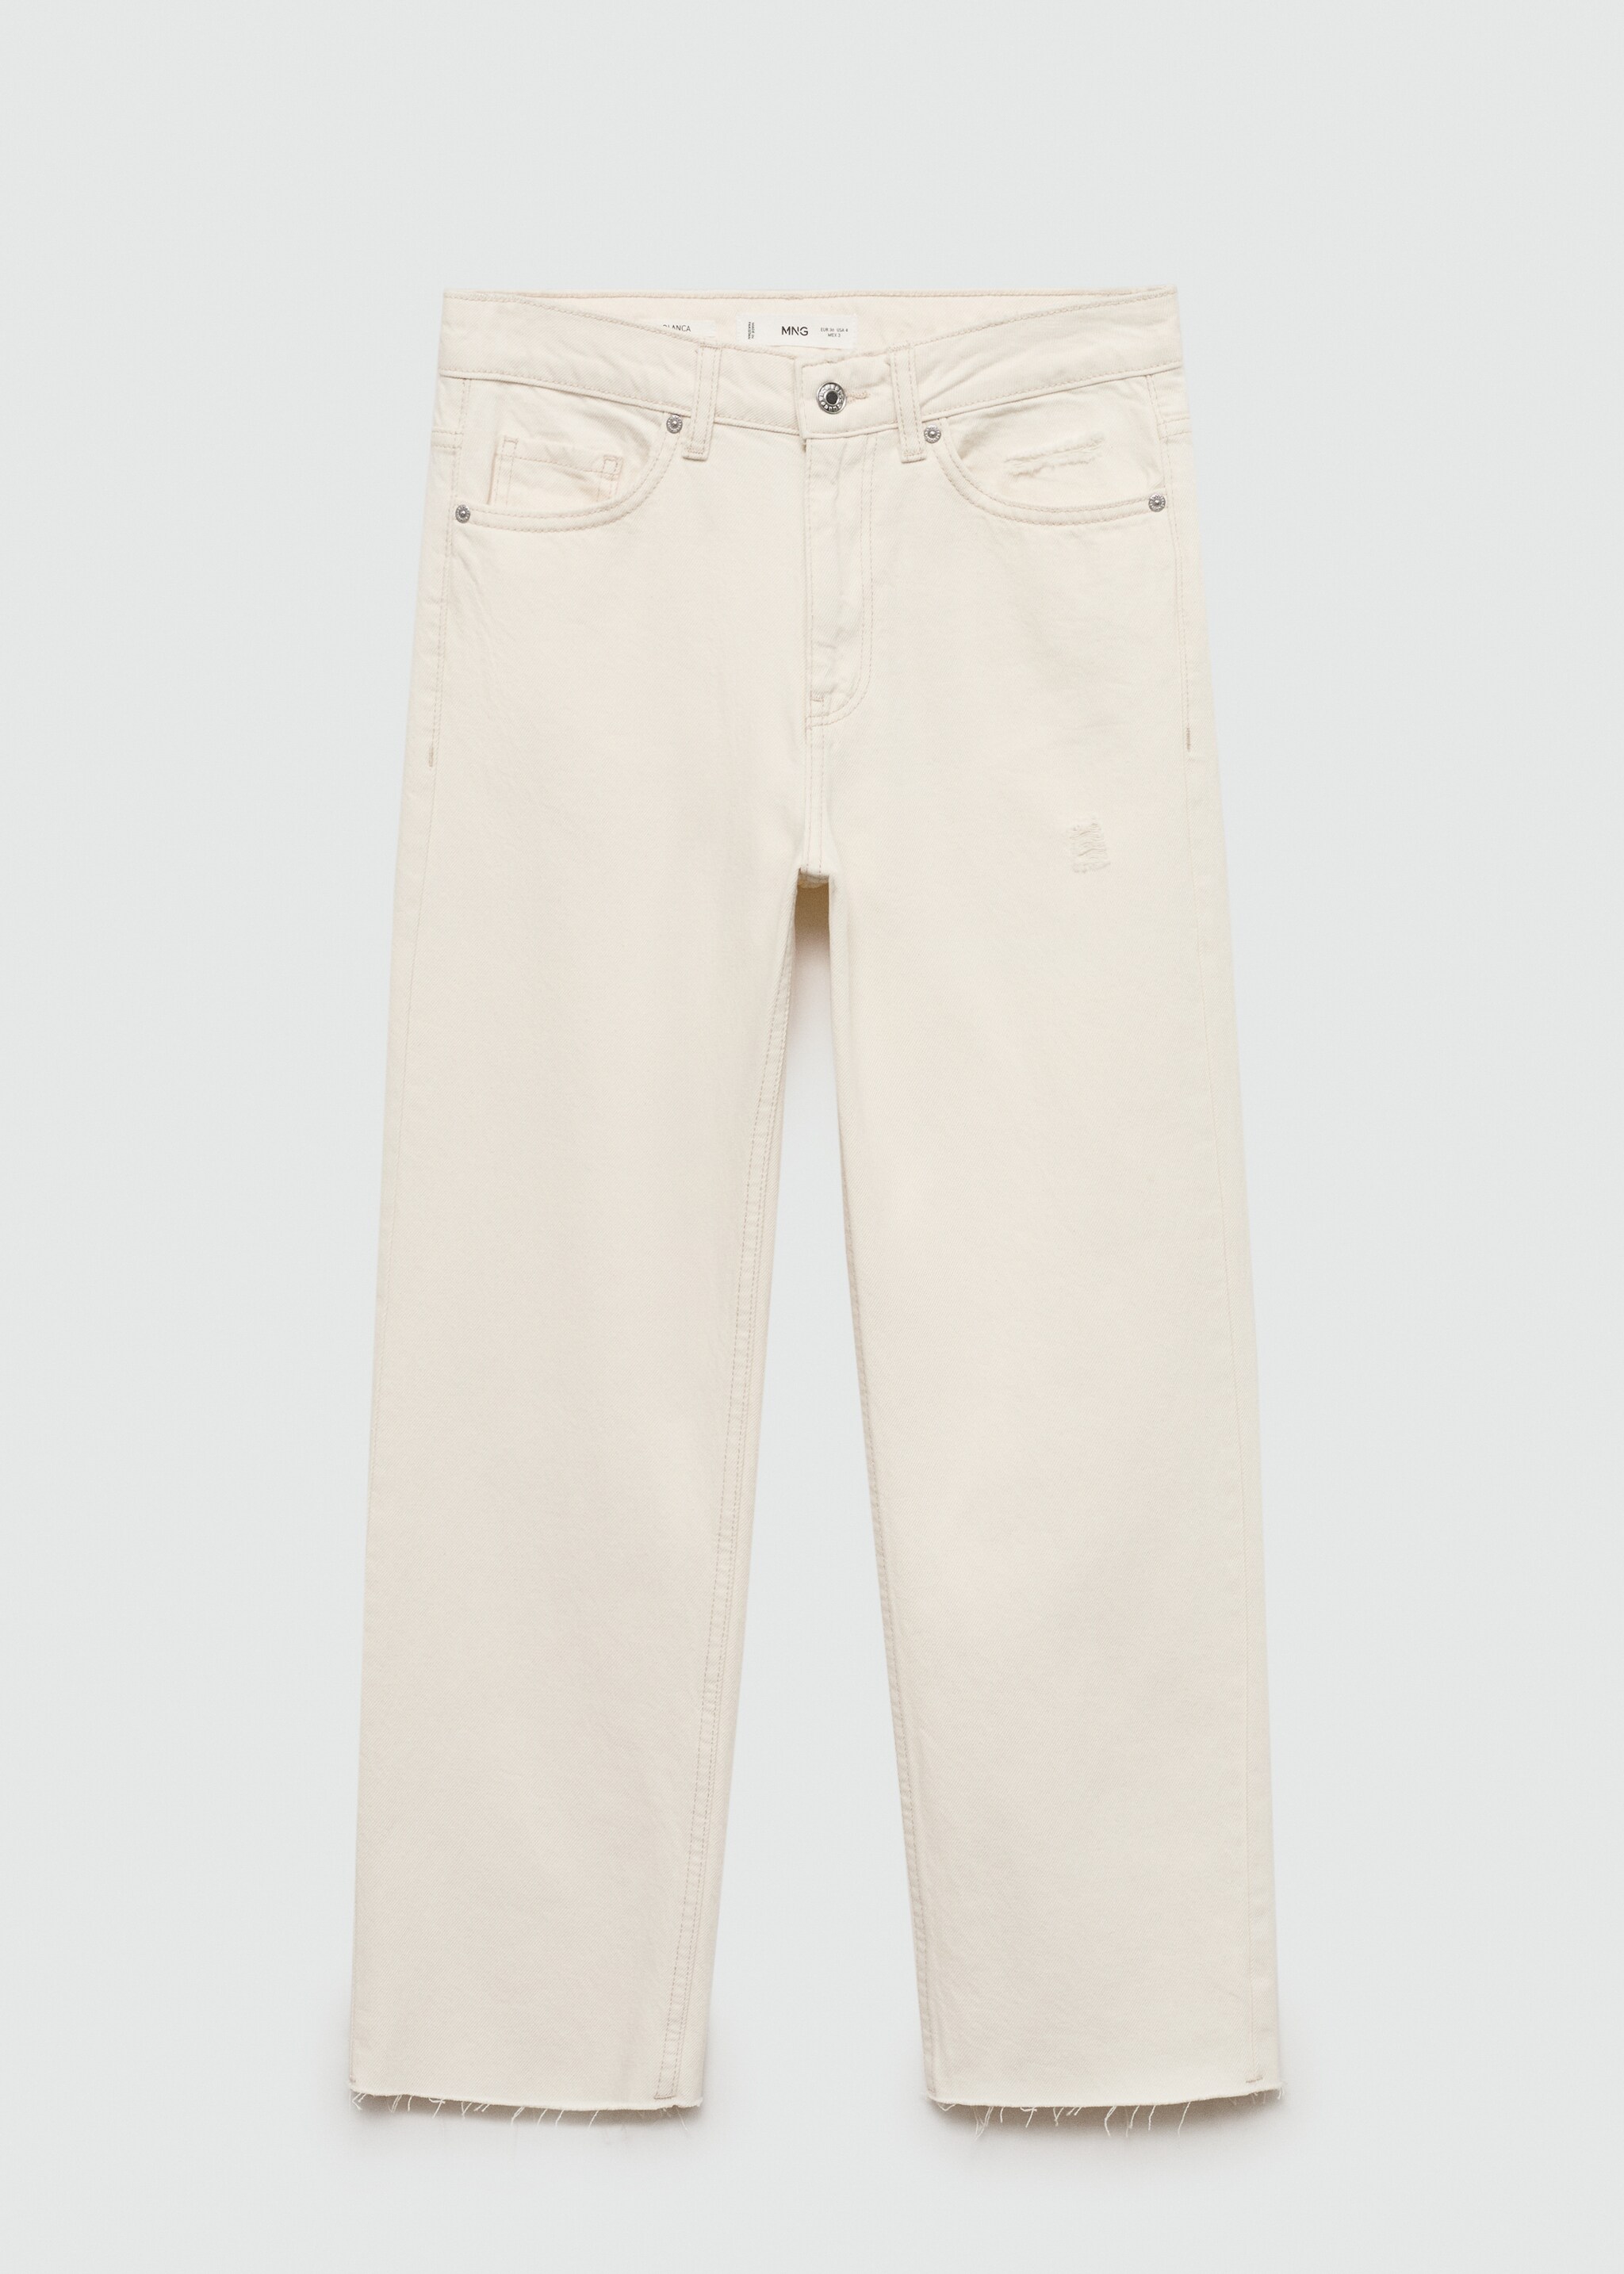 Jeans Blanca rectos crop - Artículo sin modelo